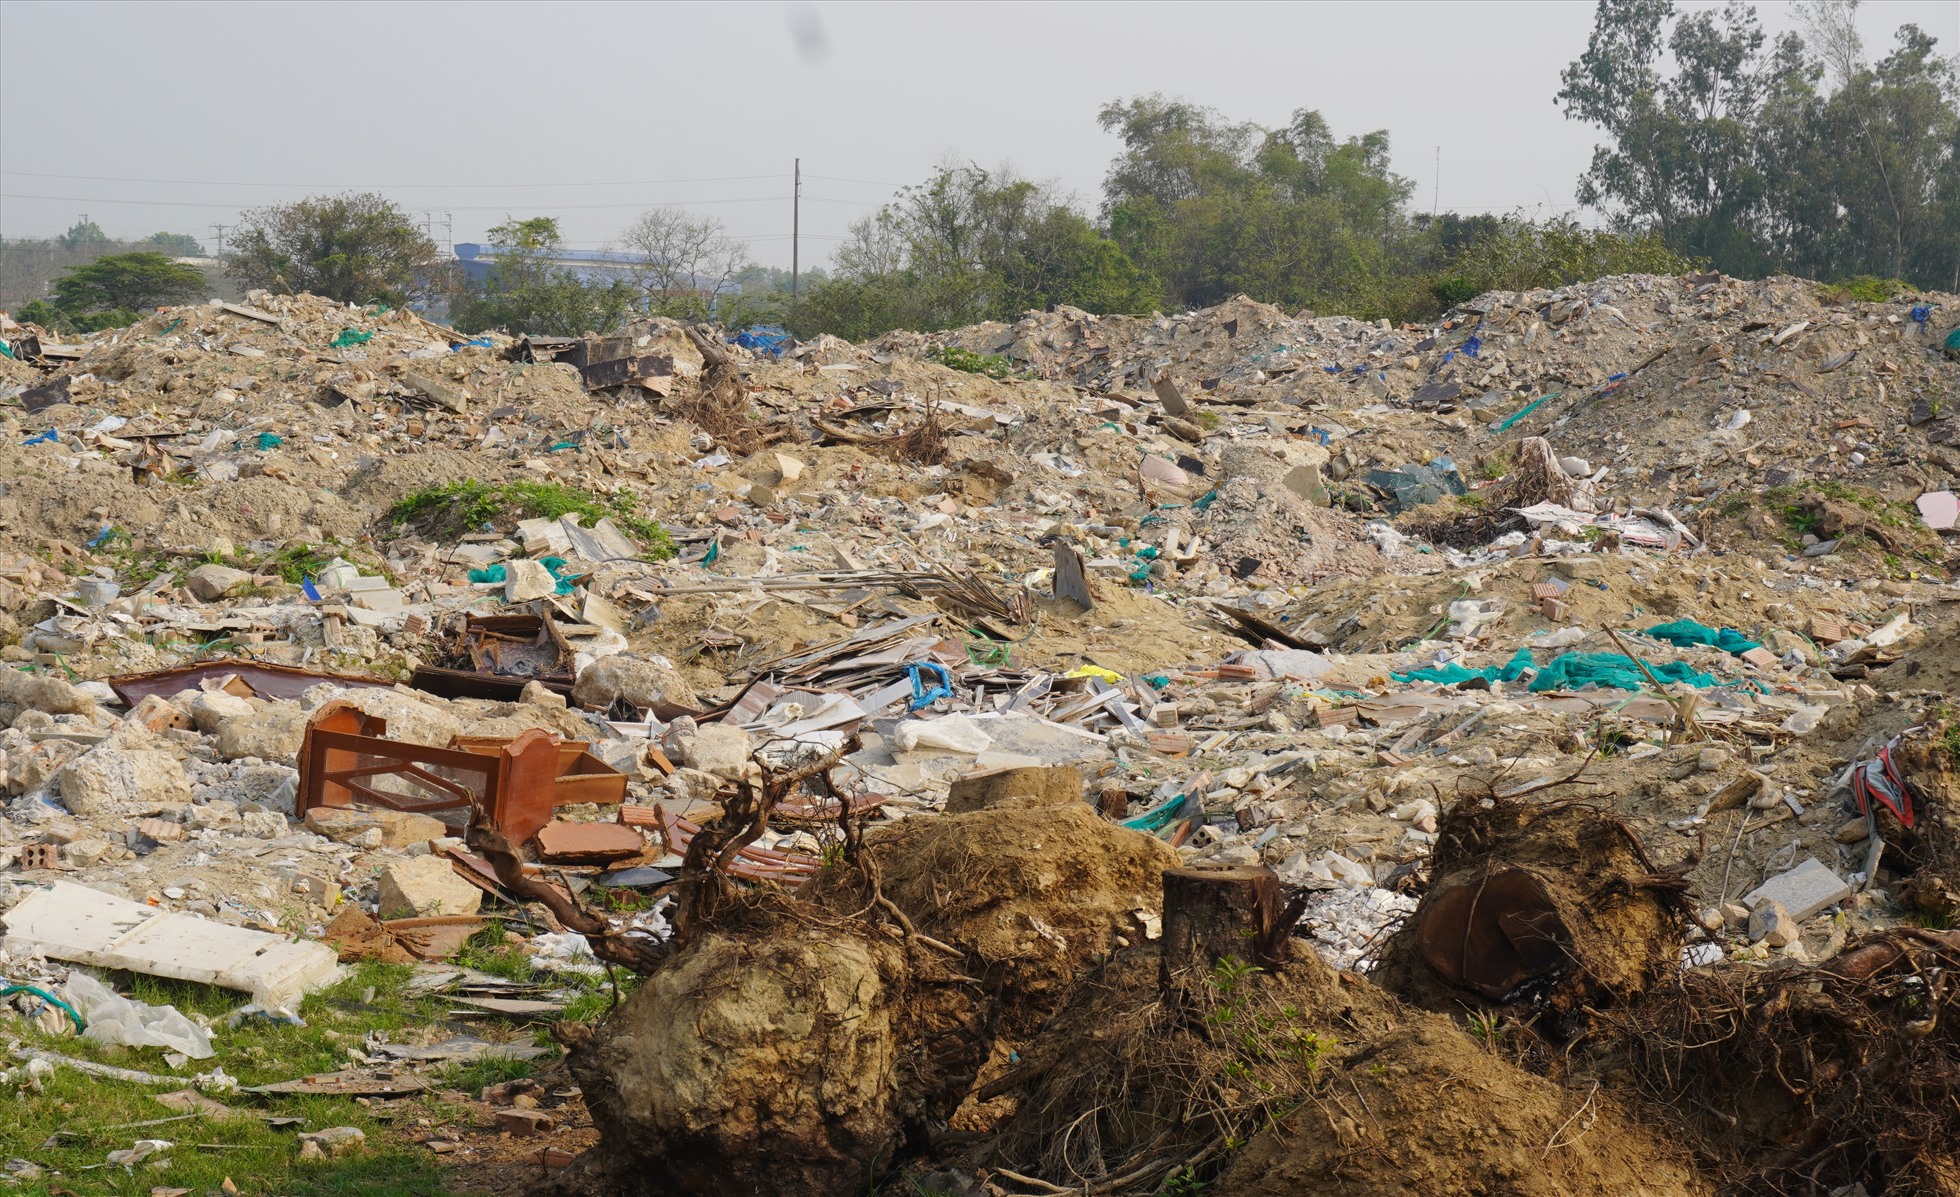 Ghi nhận tại đây cho thấy, bãi rác với đủ các loại từ rác thải sinh hoạt, sản xuất cho đến đất đá thải. Bãi rác này có diện tích rộng lên tới hàng nghìn m2. Ảnh: Quách Du